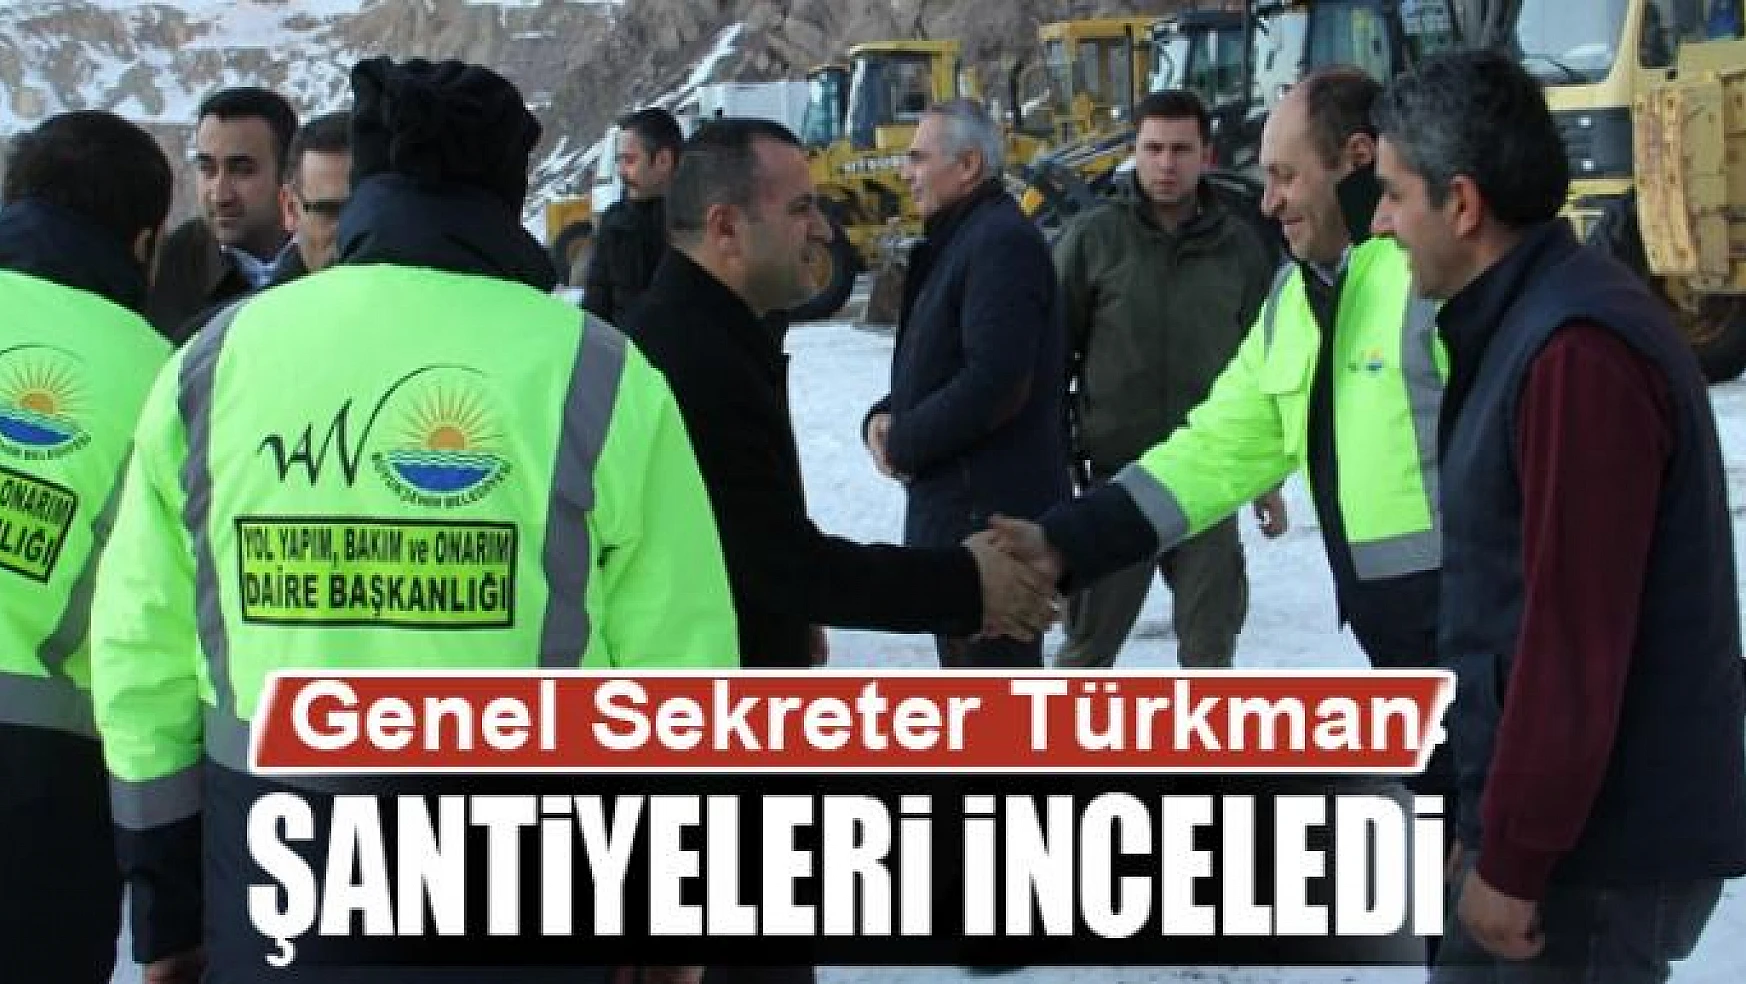 Genel Sekreter Türkman şantiyelerde incelemelerde bulundu